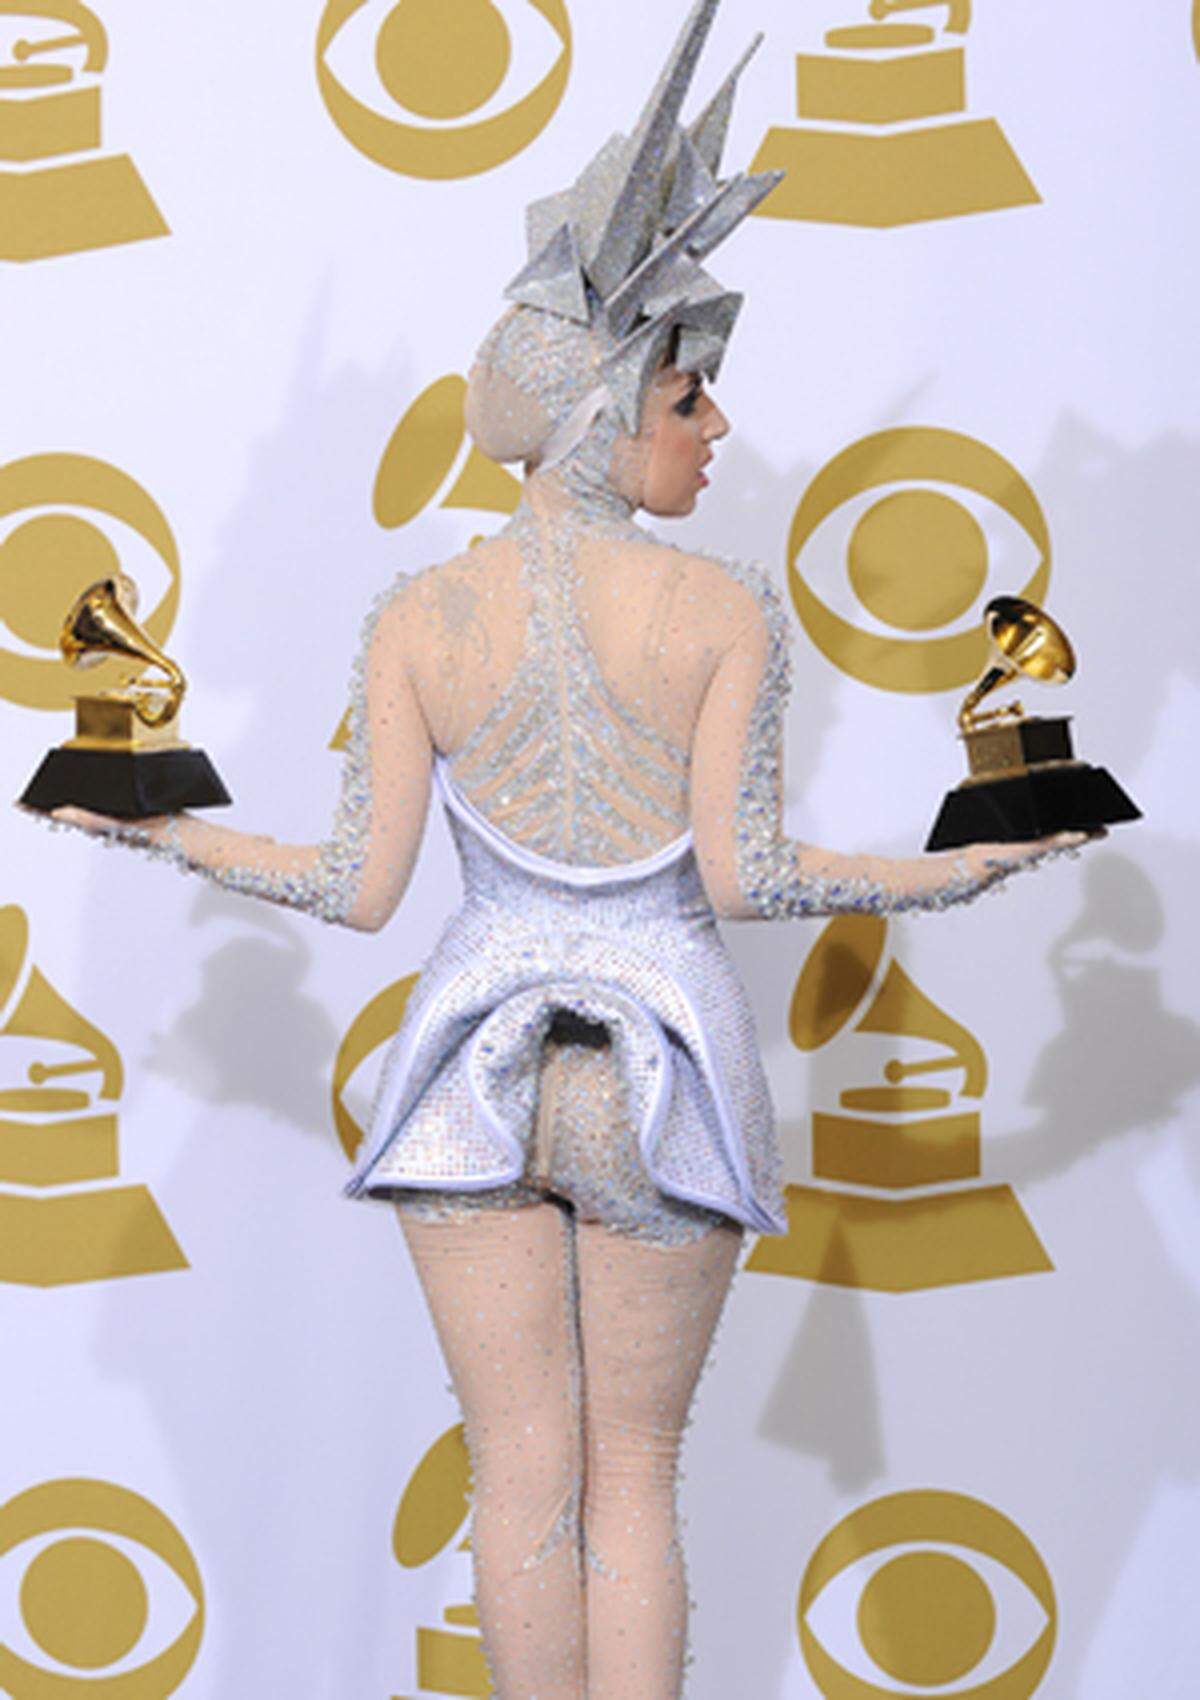 Von ihren fünf Nominierungen konnte Lady Gaga nur zwei Preise einstreifen: Für die beste Dance-Aufnahme und das Beste Electronic/Dance Album.